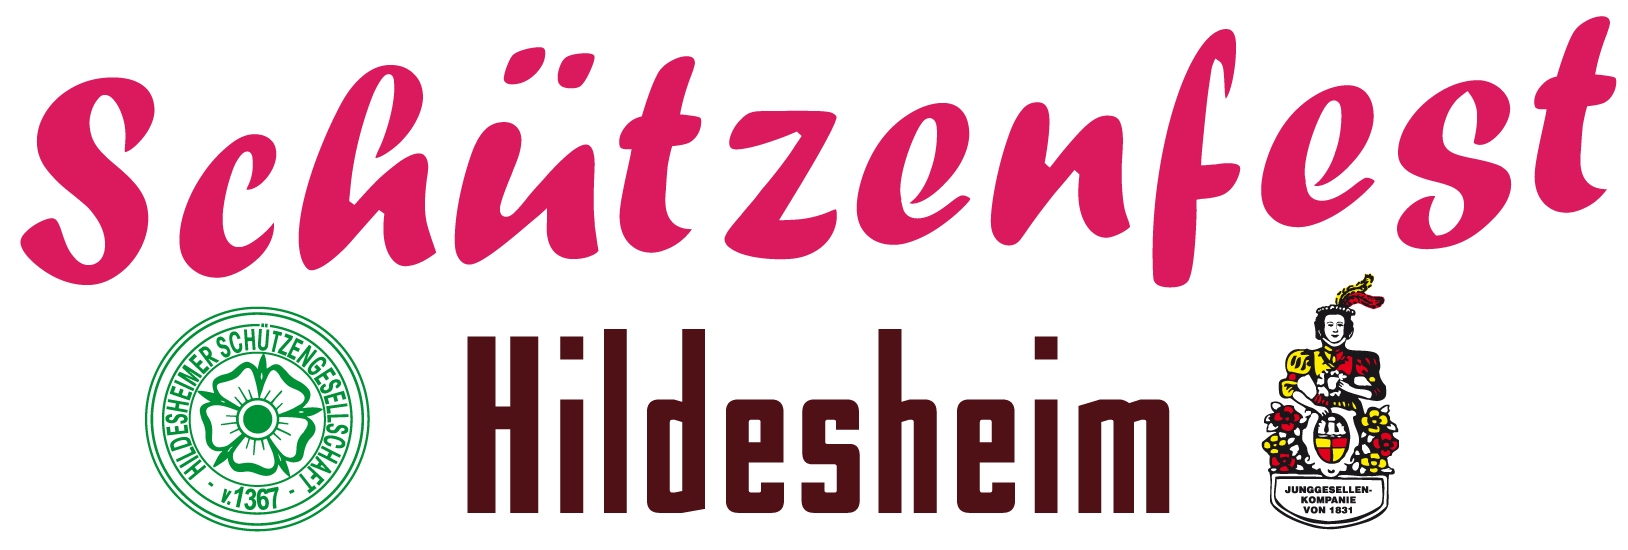 Schützenfest Hildesheim